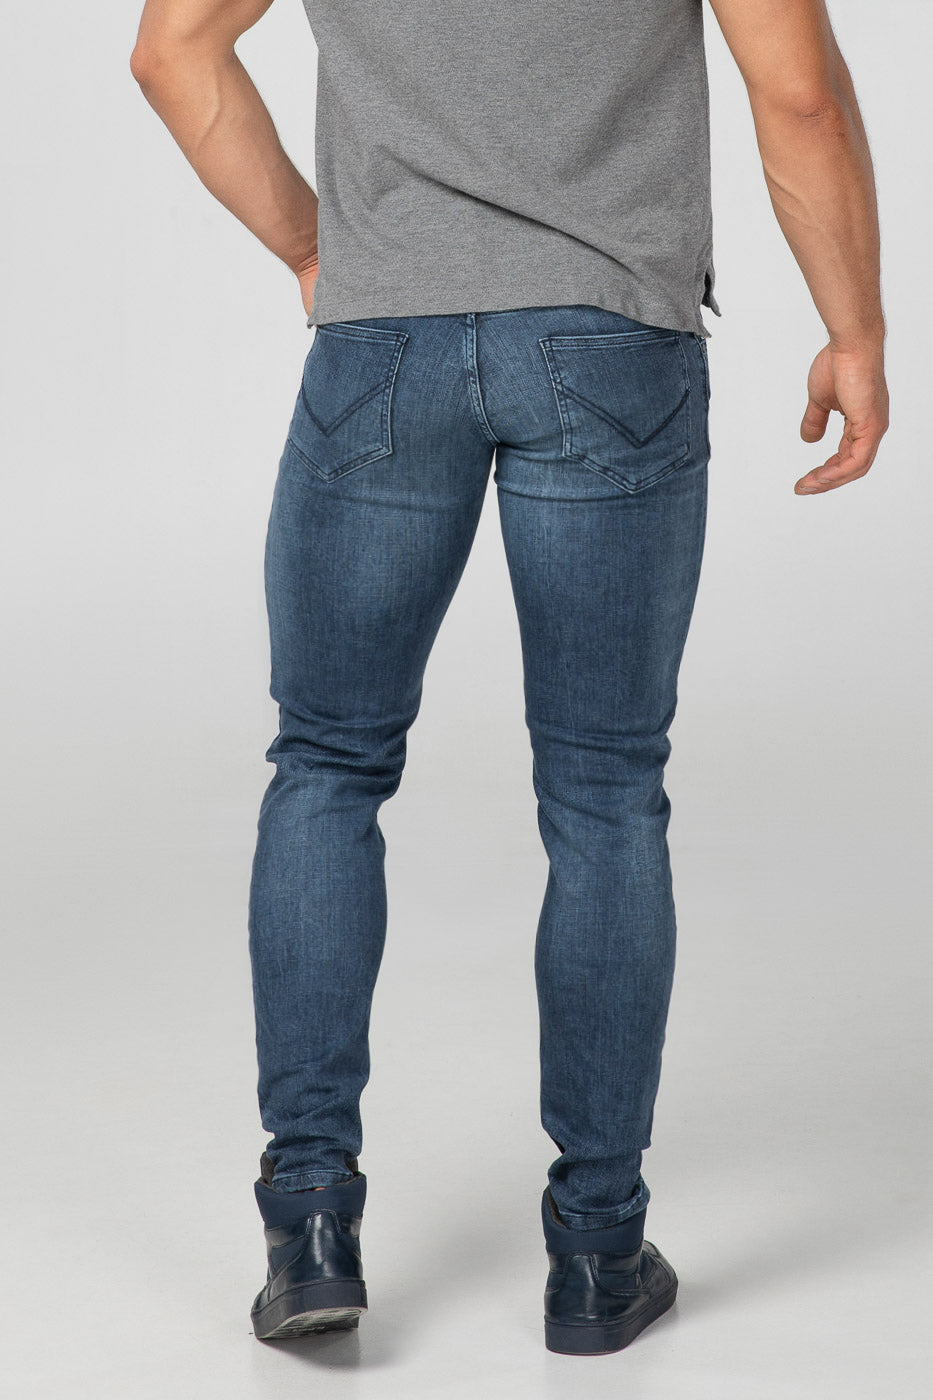 Rückseite der Aesparel Herren Sport-Jeans